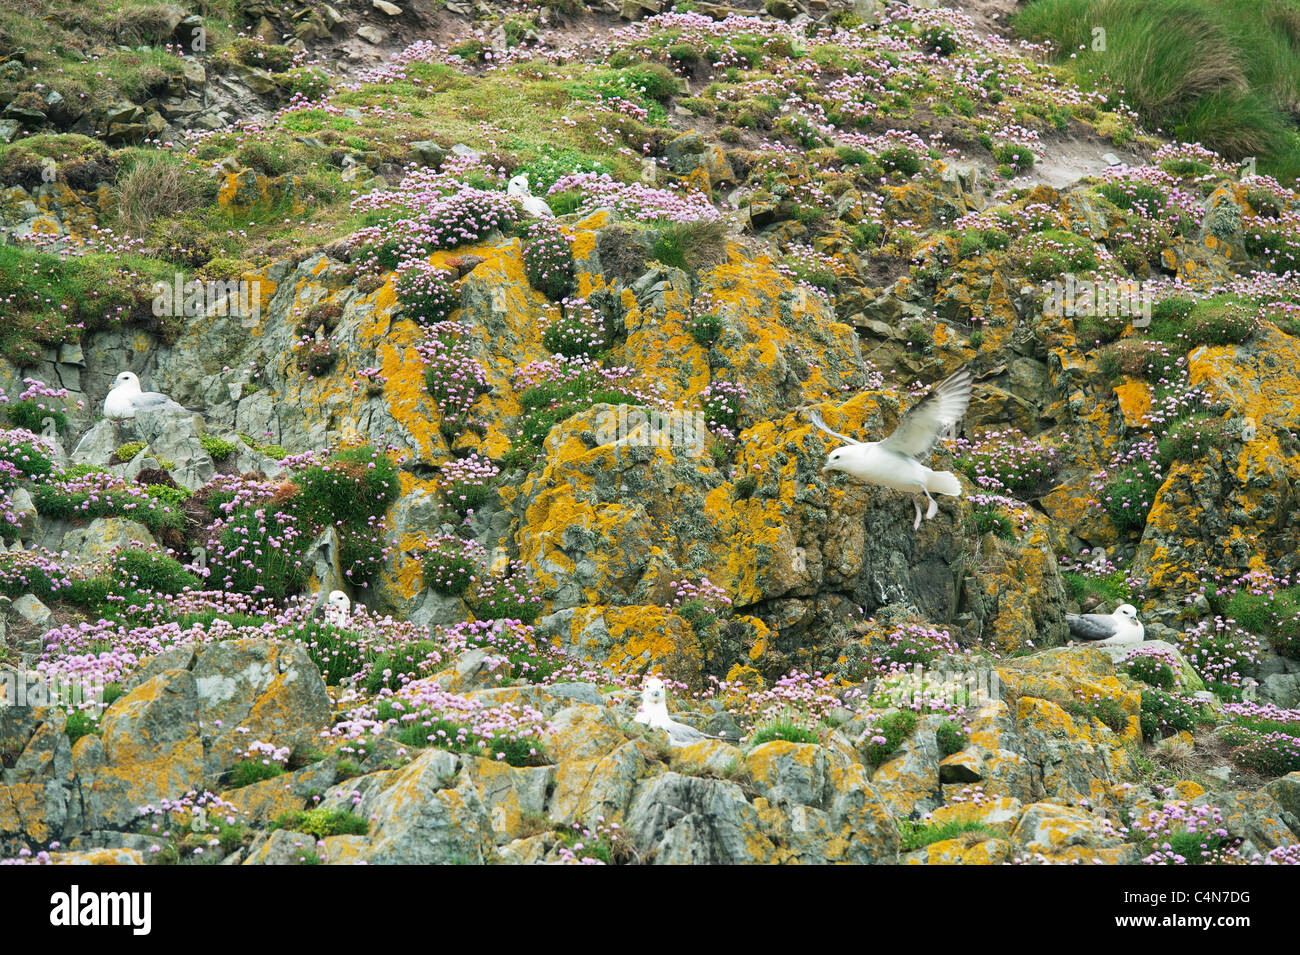 Northern Fulmar (Fulmarus glacialis) nesting in Parsimonia o mare rosa (Armeria maritima) Fair Isle, Scozia Foto Stock